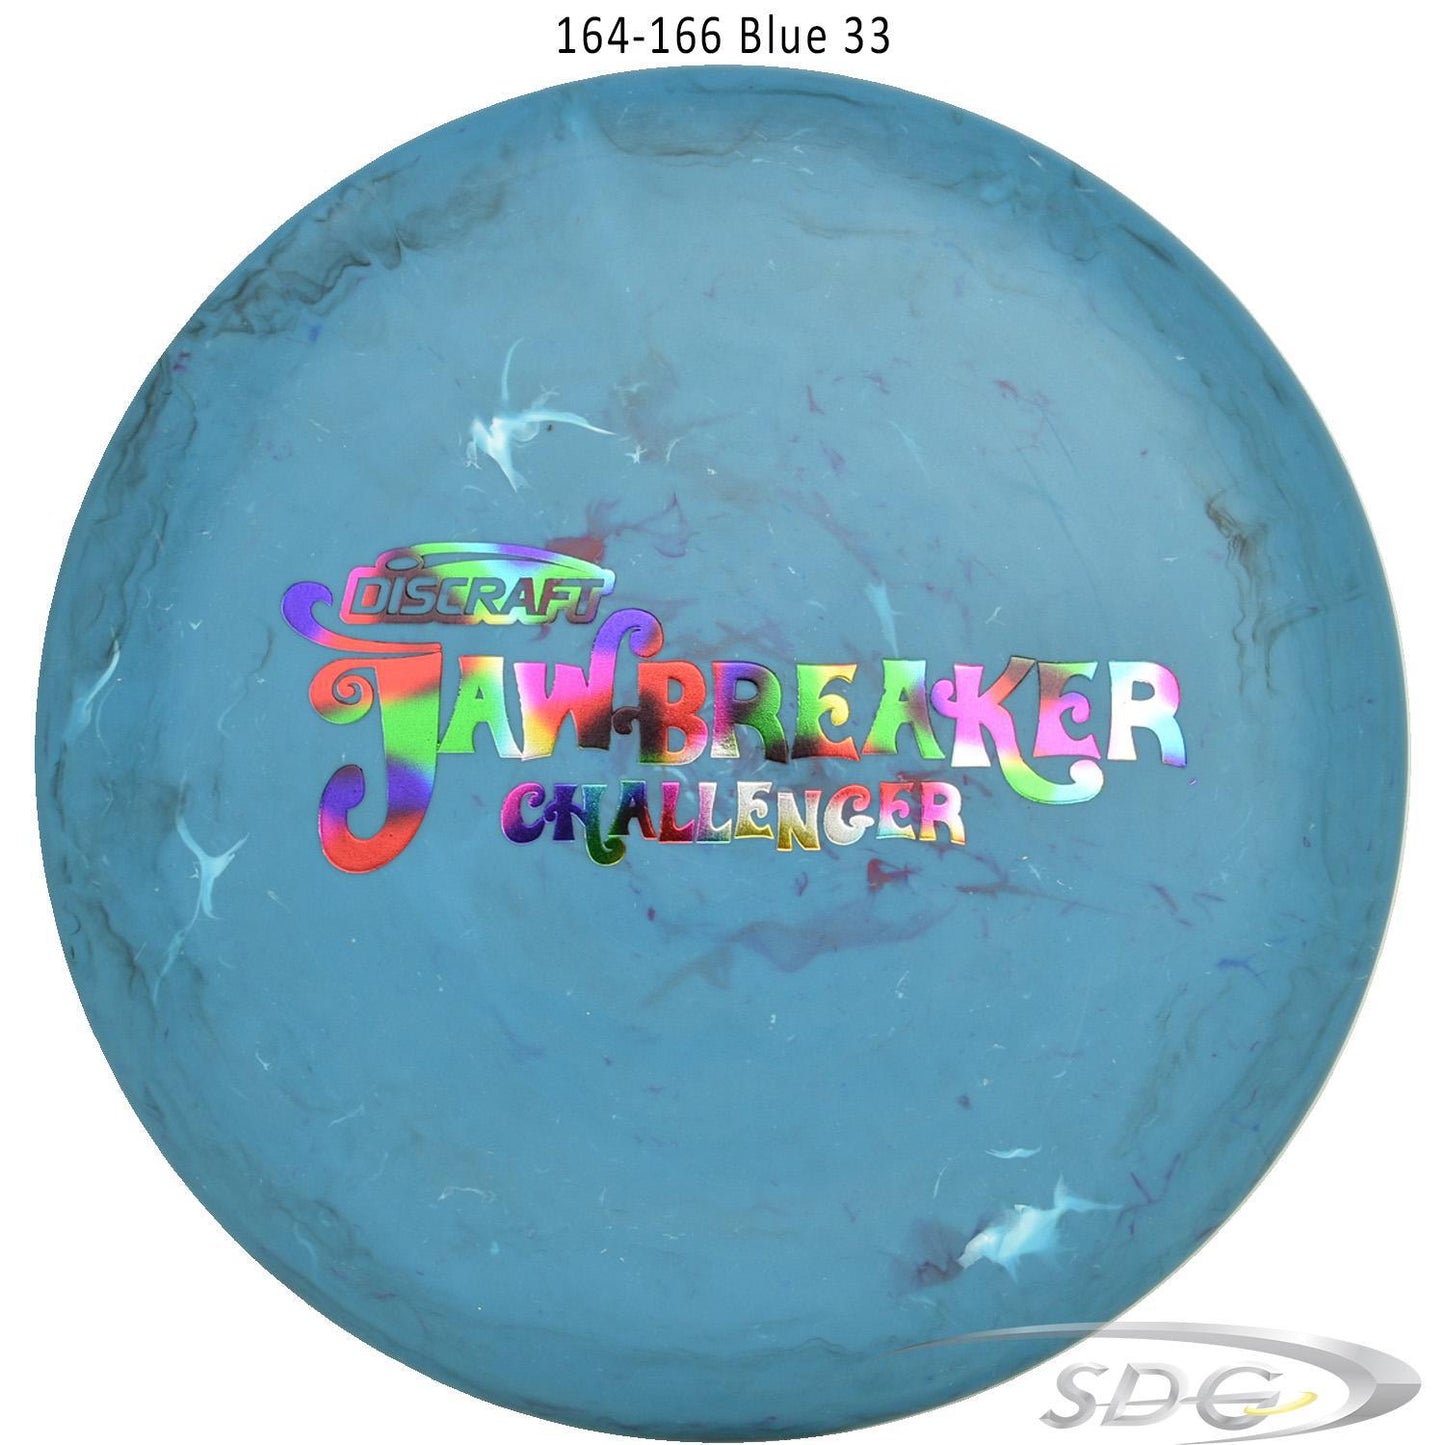 discraft-jawbreaker-challenger-disc-golf-putter 164-166 Blue 33 